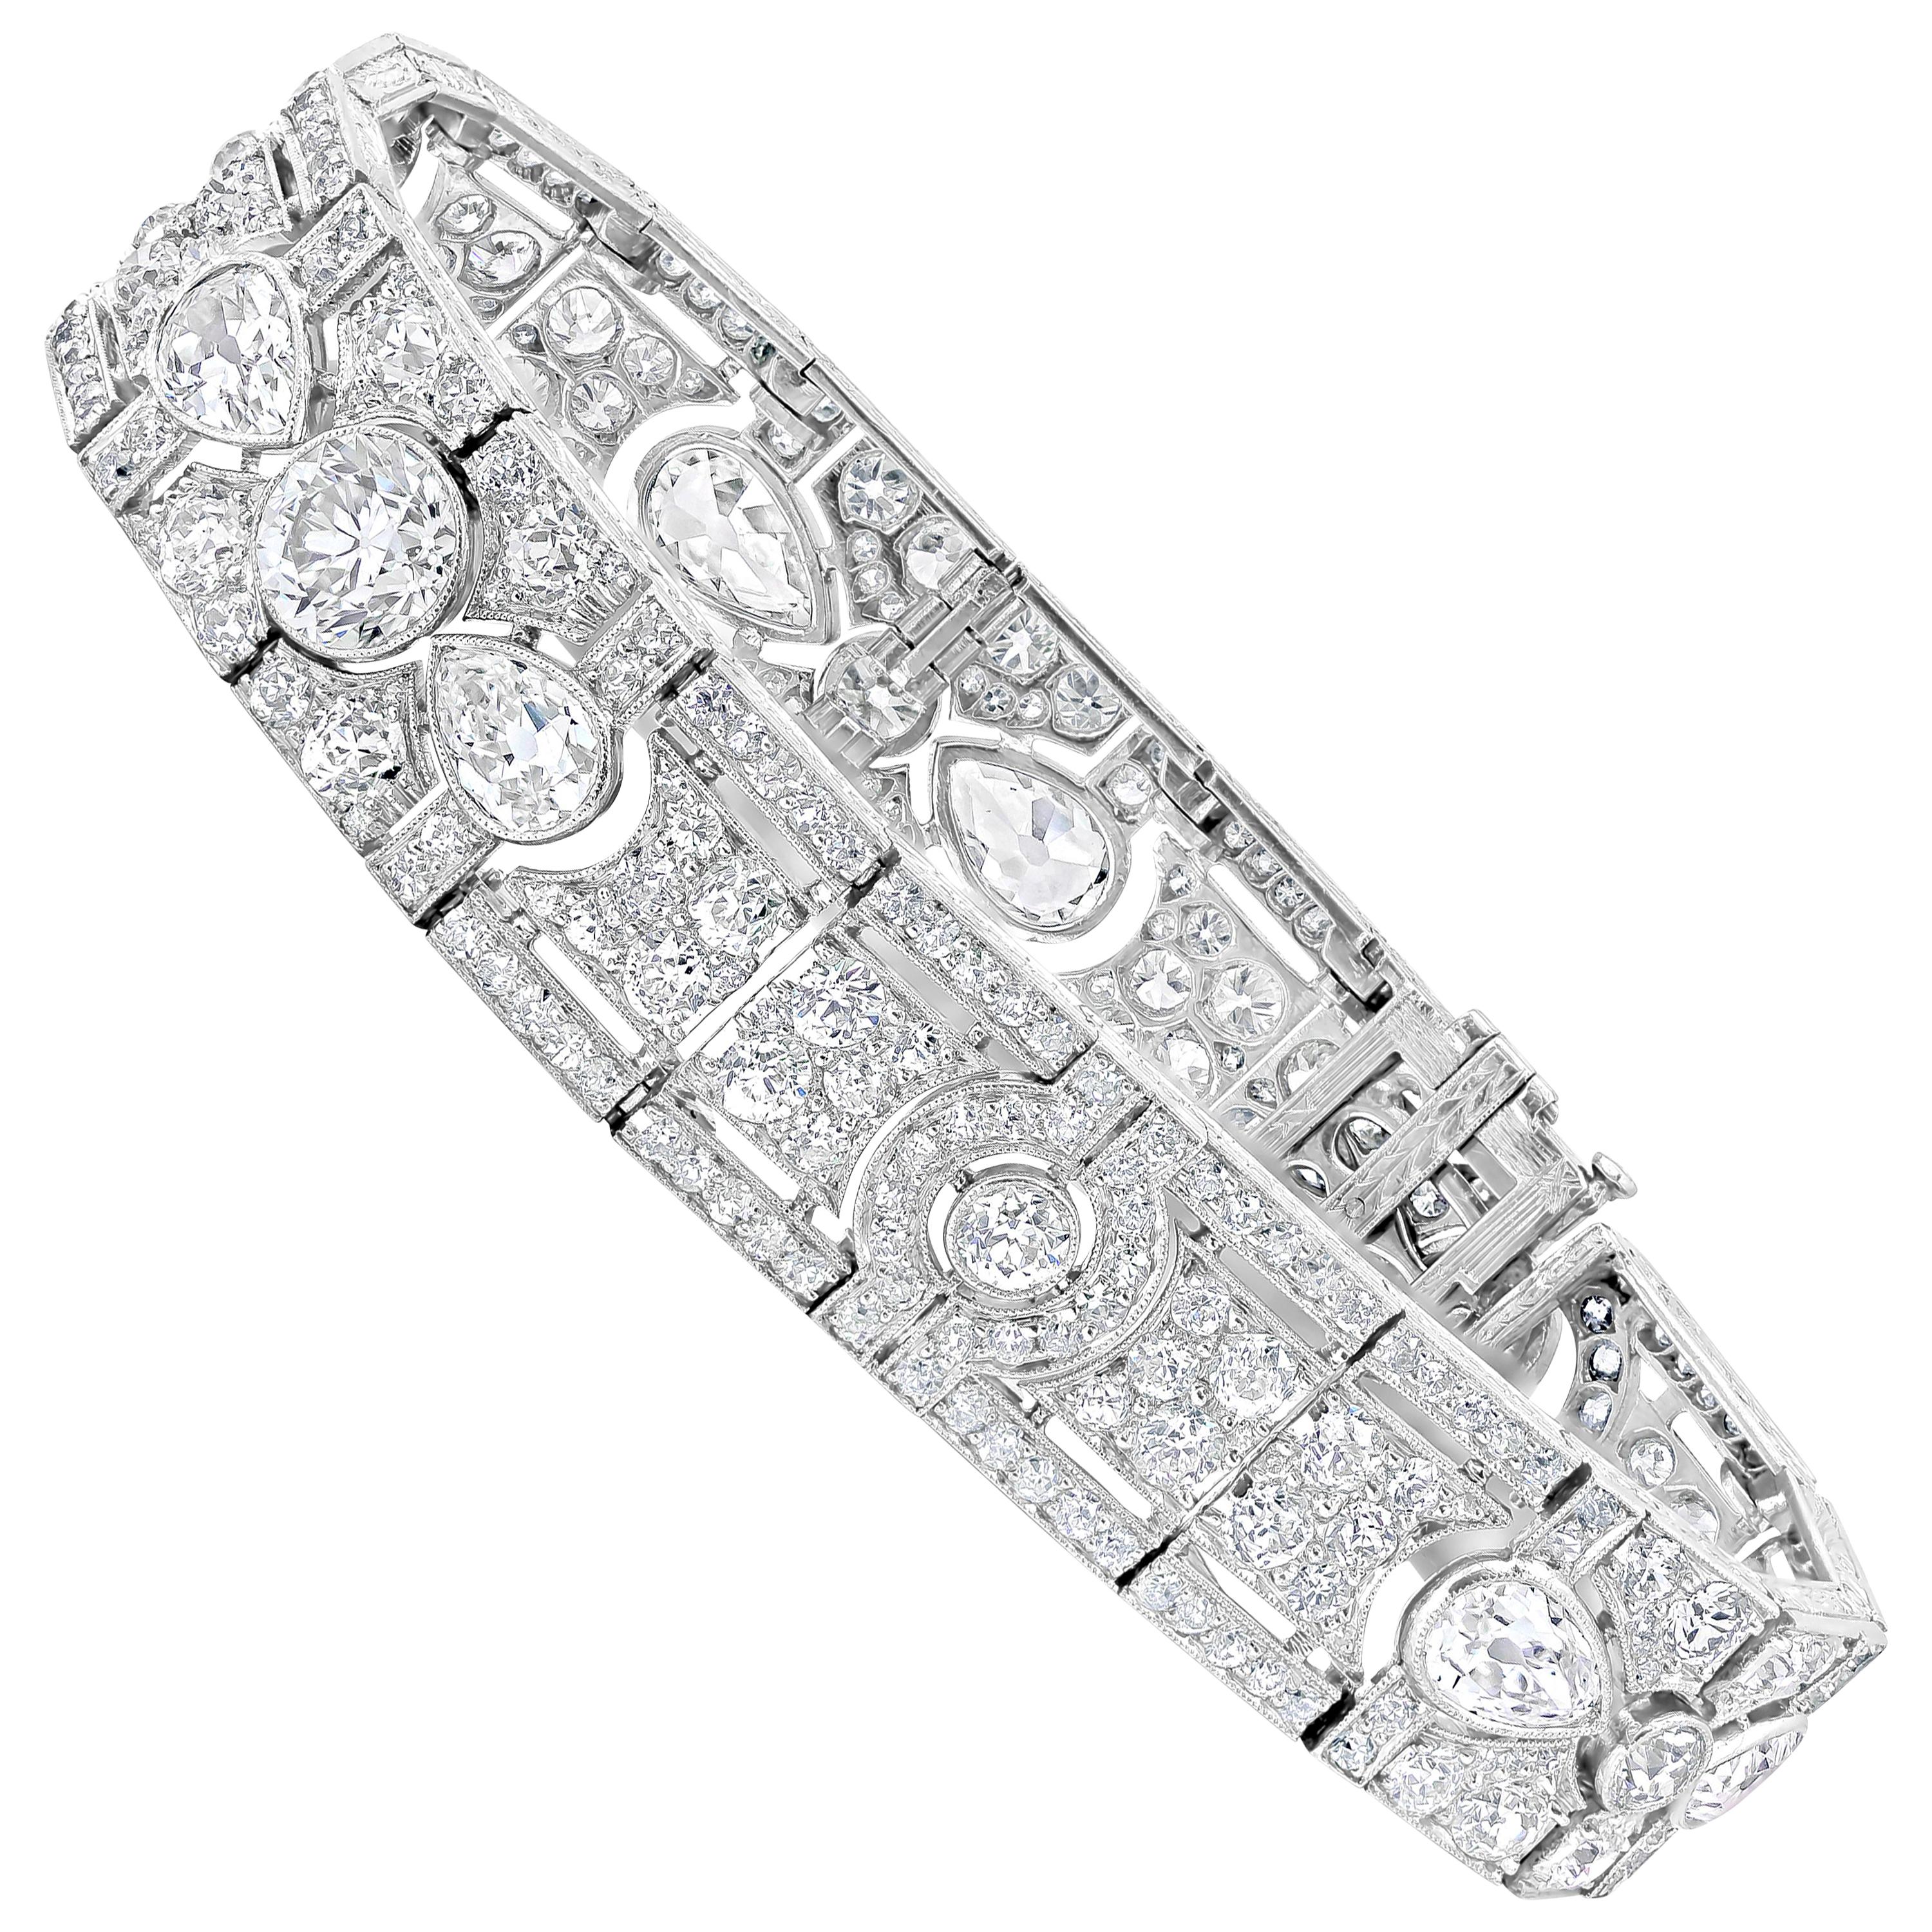 17 Carats Total Mixed Cut Diamond Antique Art Deco Platinum Bracelet For Sale